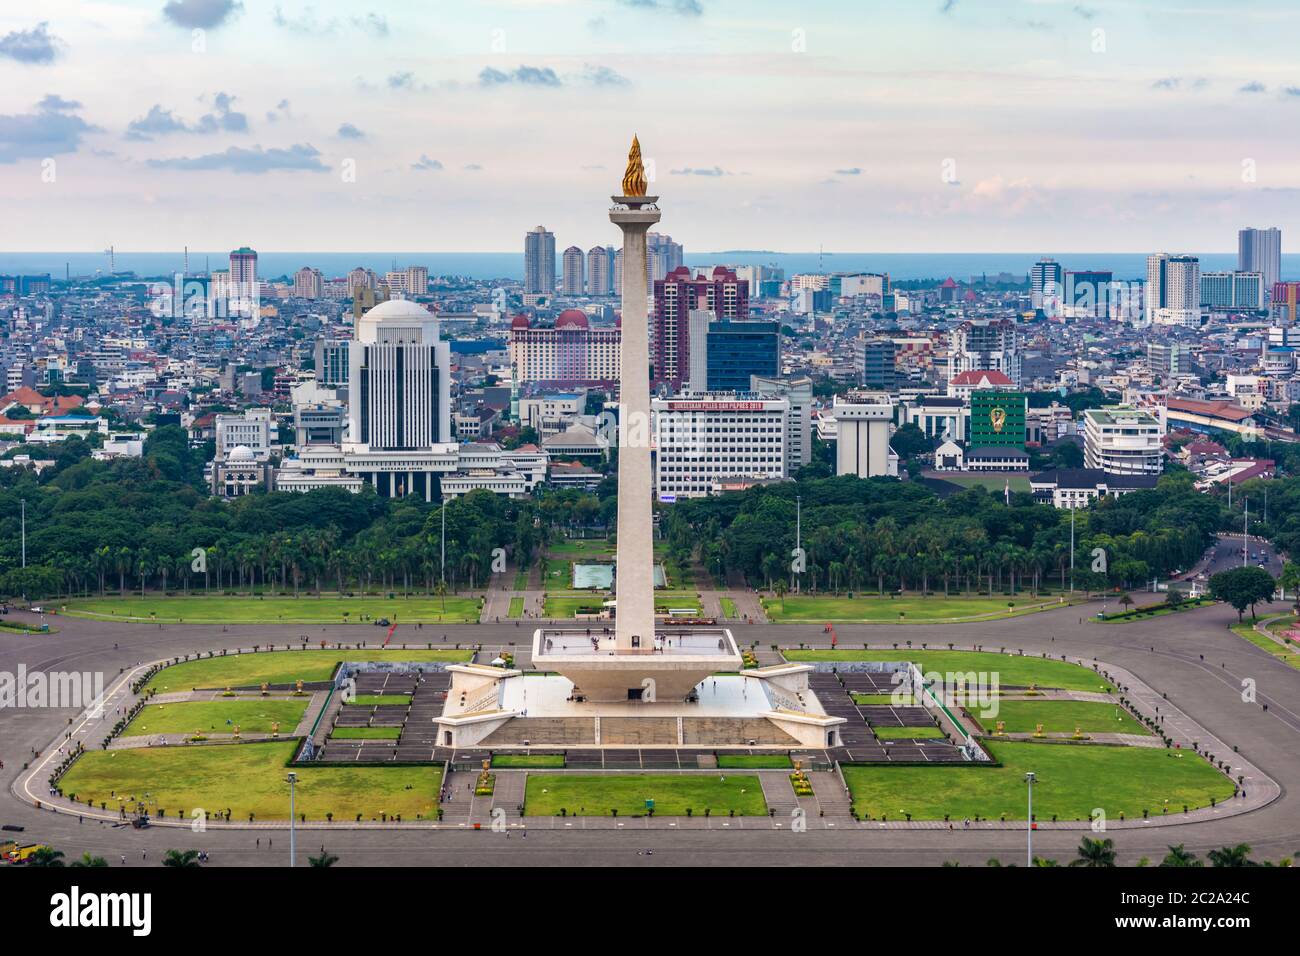 Jakarta, Indonesien - 19. Februar 2019: Luftaufnahme des Tugu Monas (Monumen Nasional) oder Nationaldenkmals. Die Bucht von Jakarta ist im hinteren Teil sichtbar Stockfoto